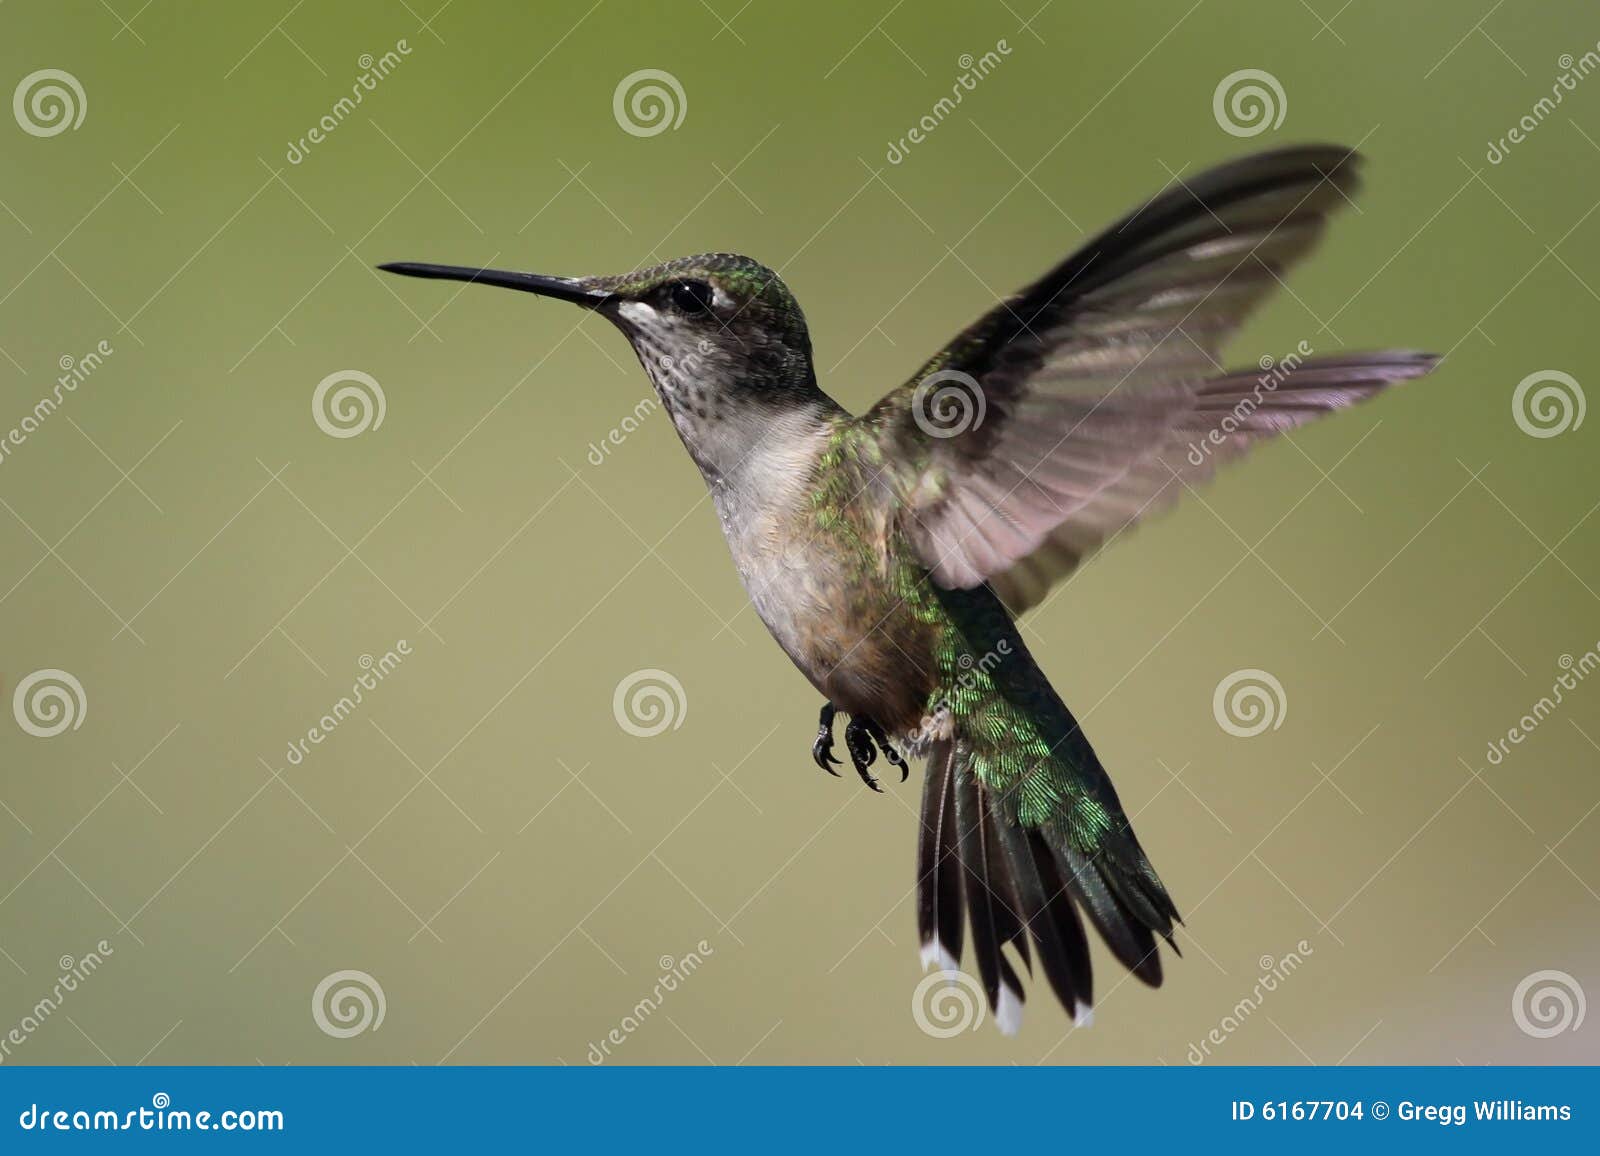 hummingbird hovering.